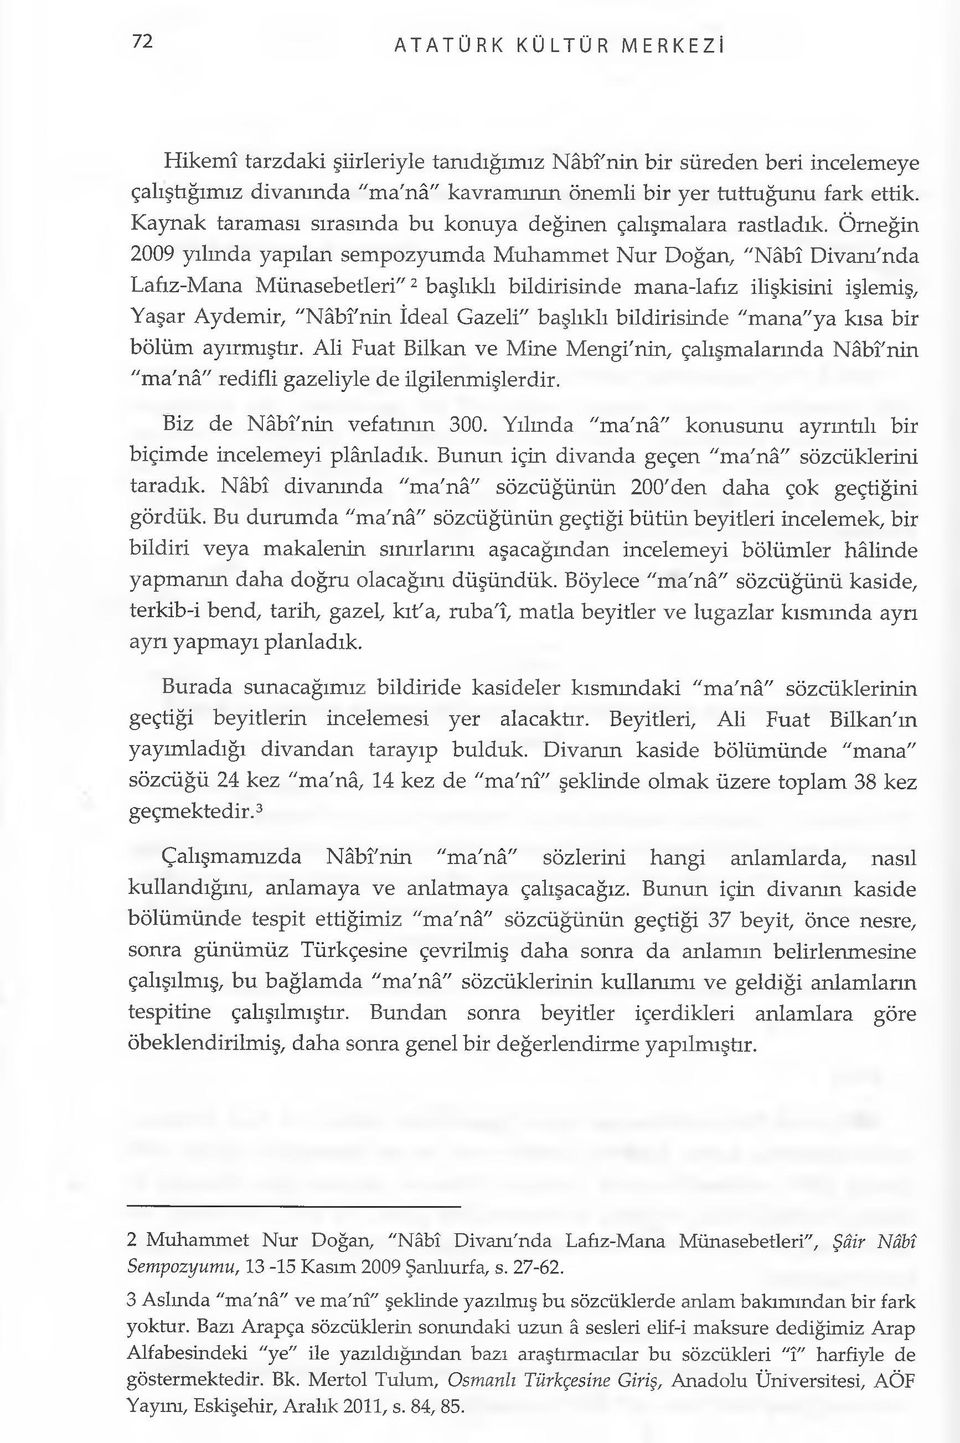 Örneğin 2009 yılında yapılan sempozyumda Muhammet Nur Doğan, "Nâbî Divam'nda Lafız-Mana Münasebetleri"2 başlıklı bildirisinde mana-lafız ilişkisini işlemiş, Yaşar Aydemir, "Nâbî'nin İdeal Gazeli"